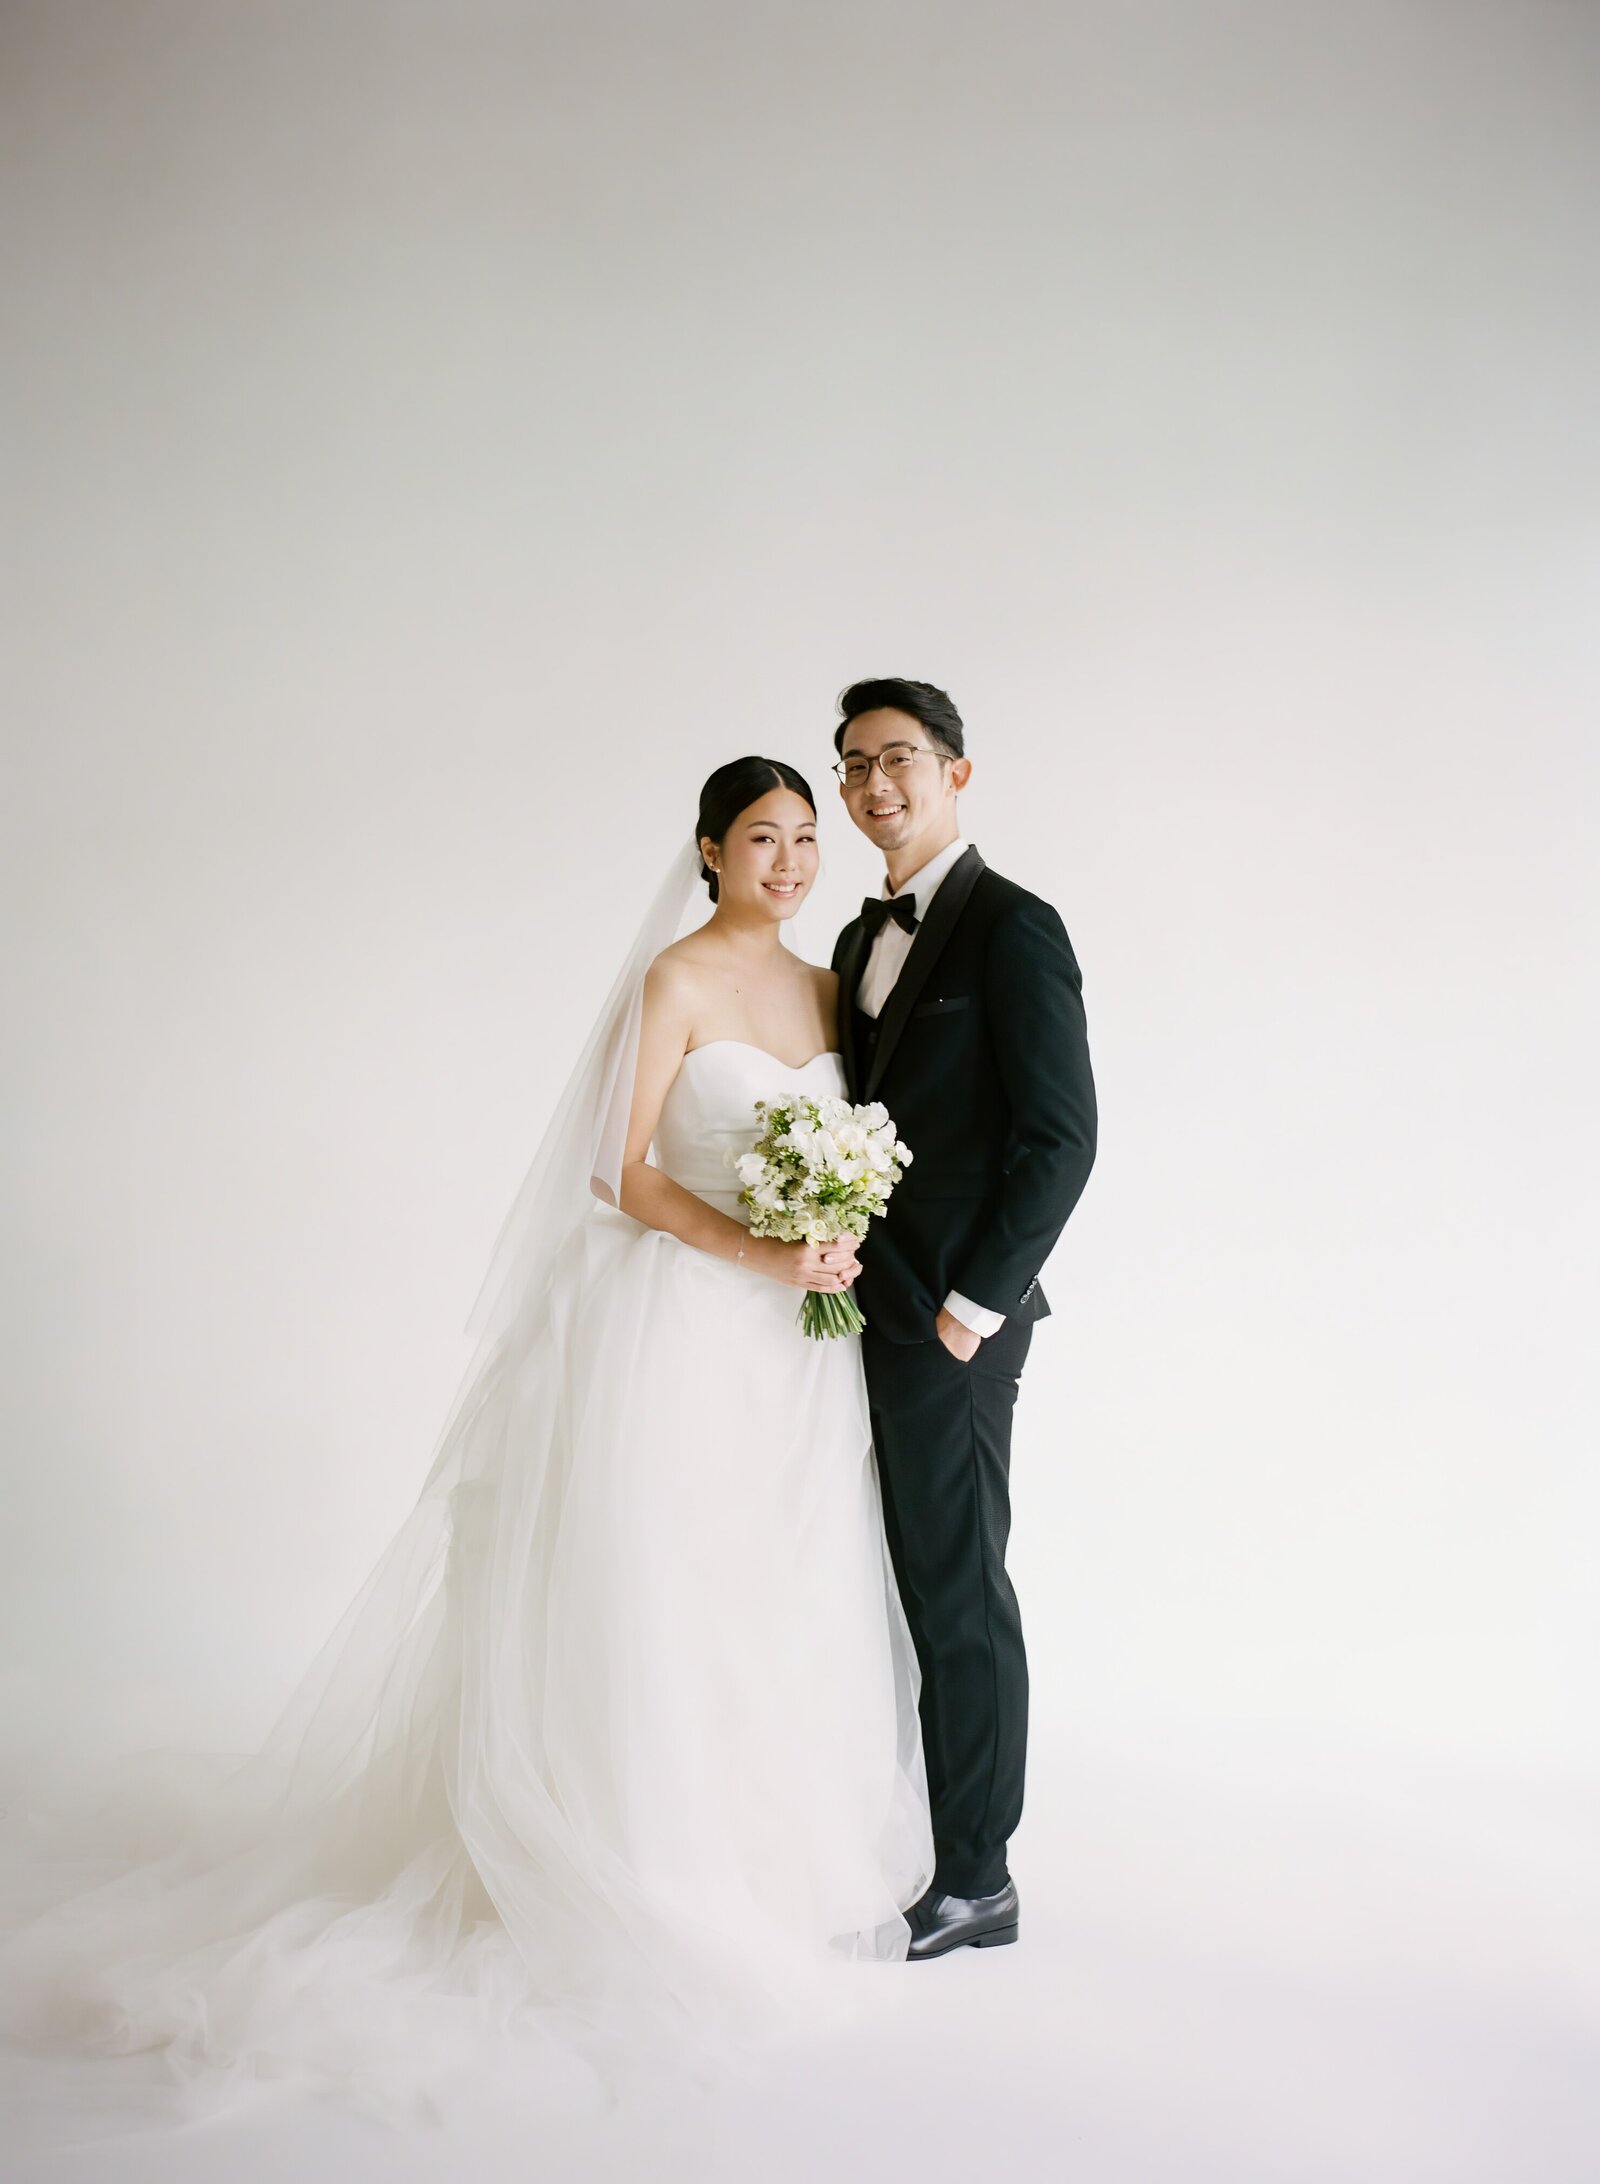 020Josiah & Sabrina Singapore Pre-Wedding Photography MARITHA MAE-topaz-enhance-1.6x-faceai